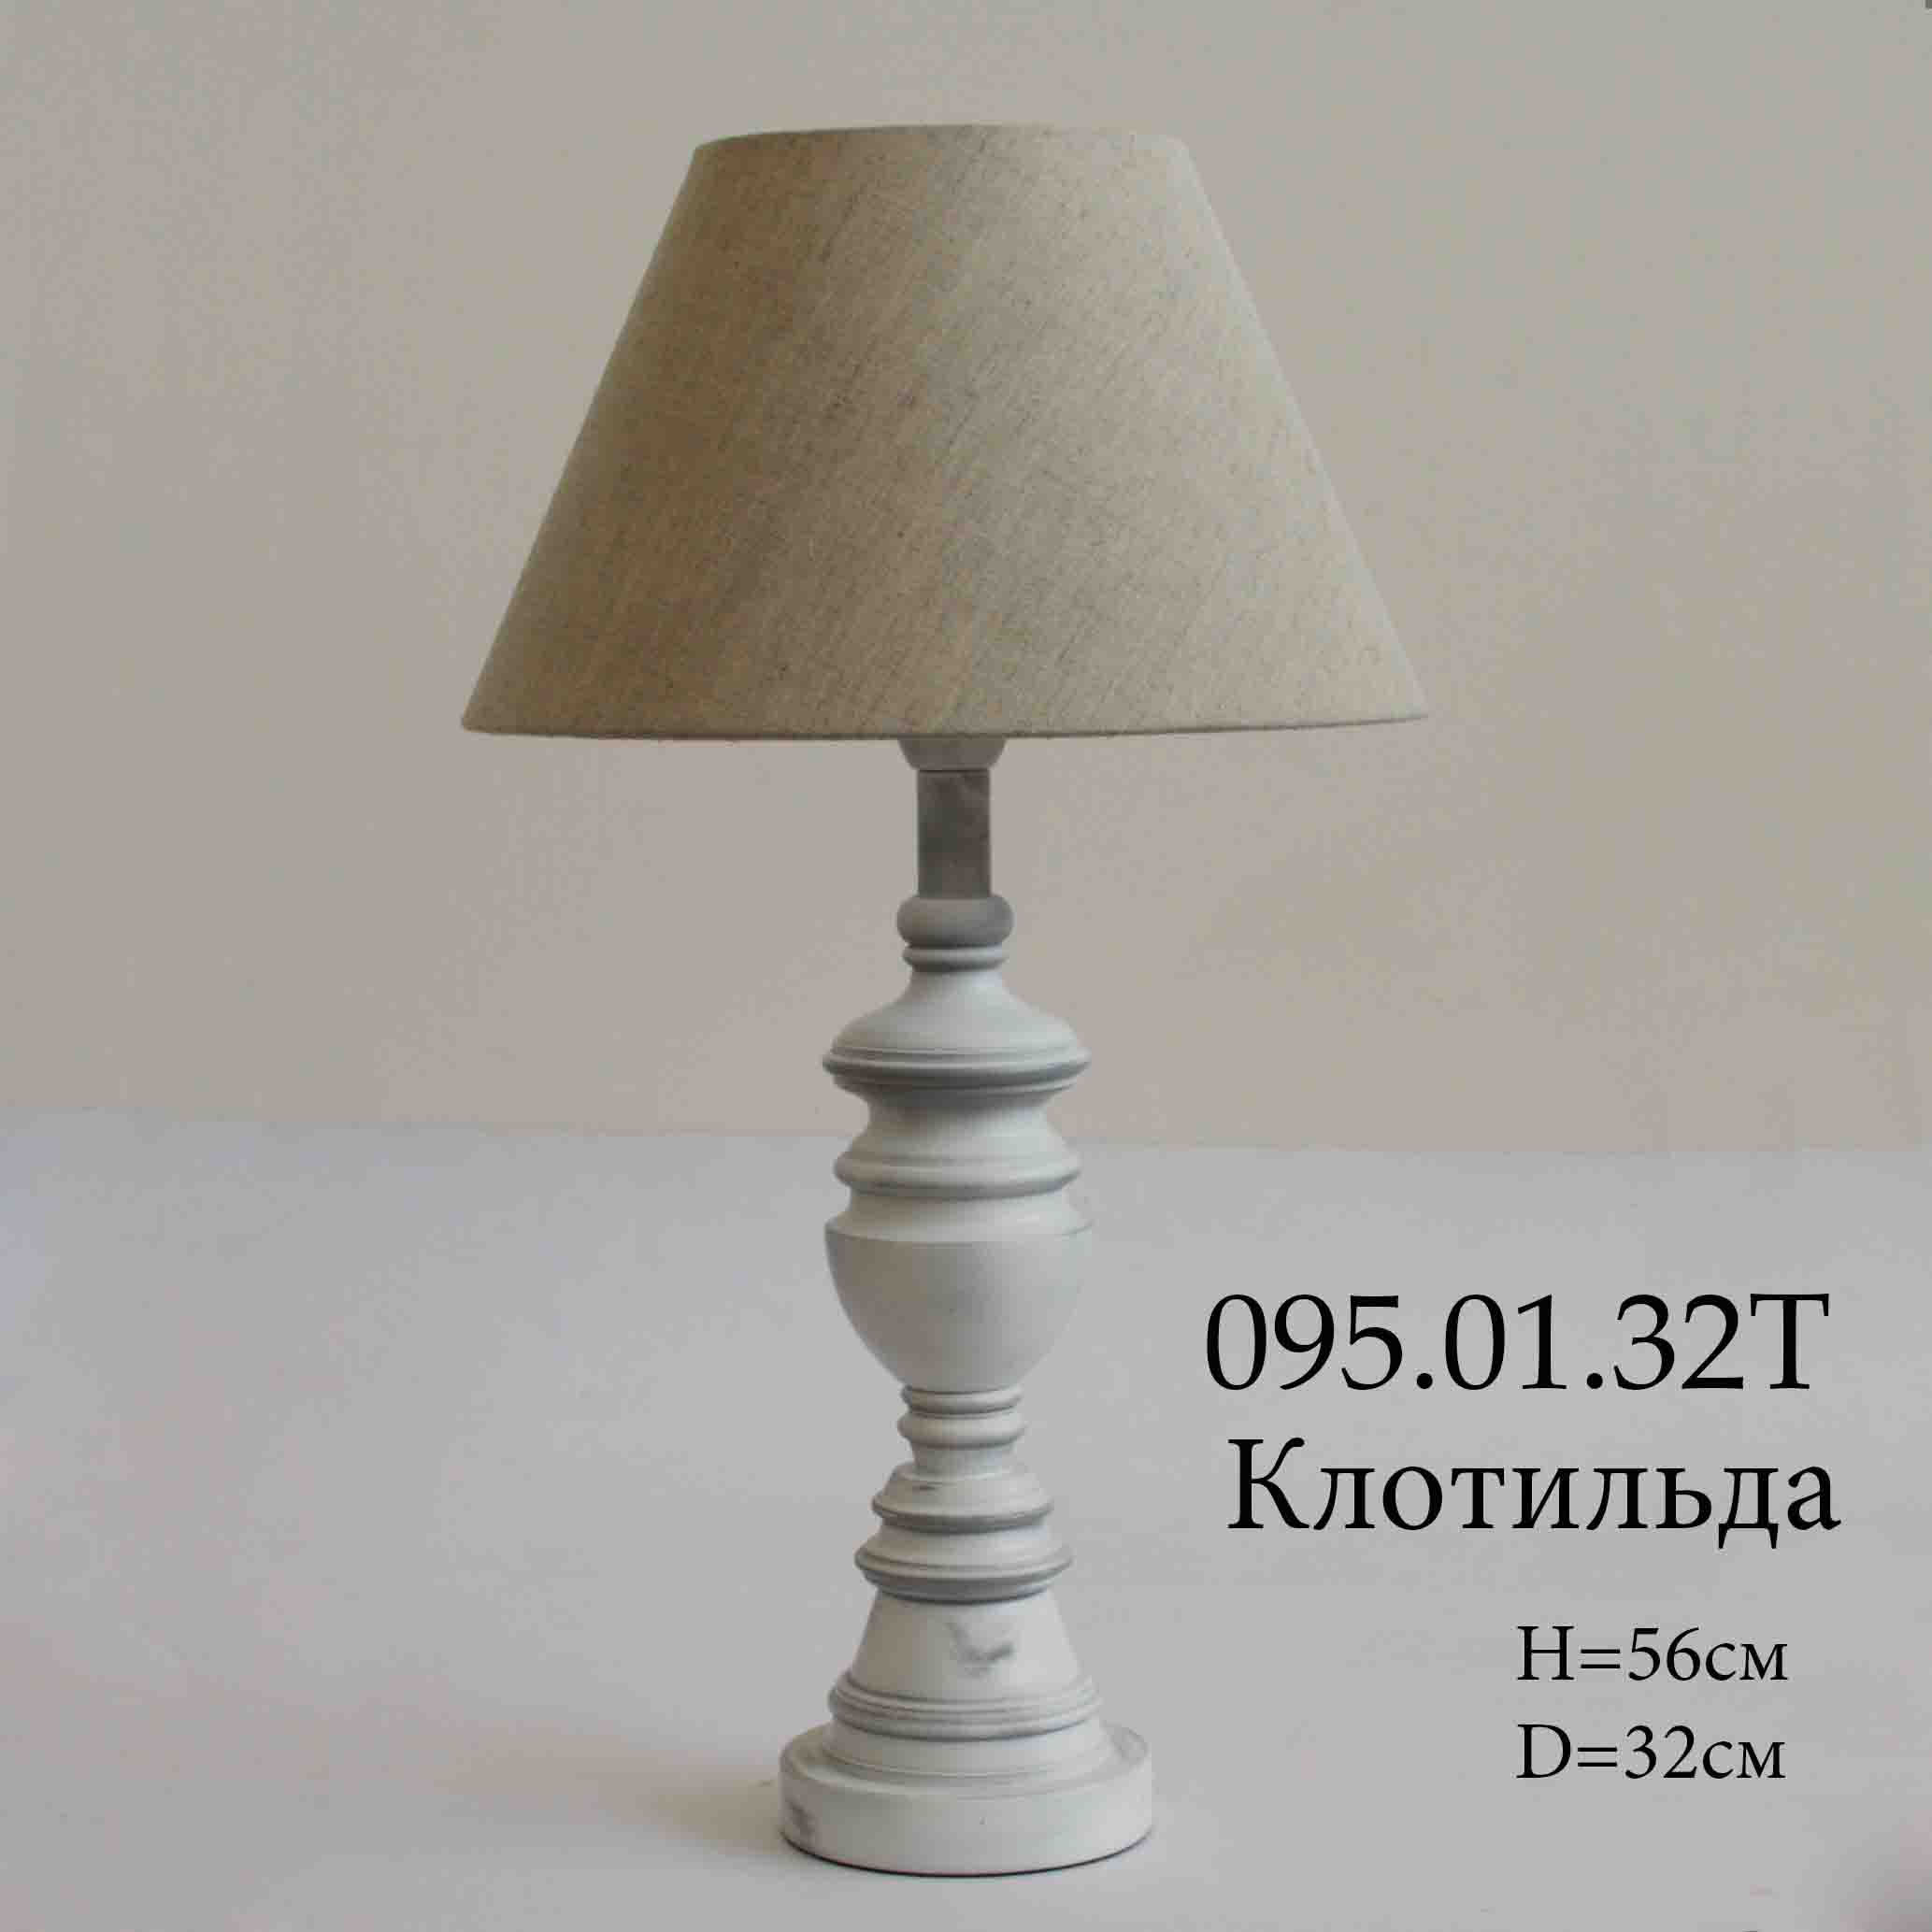 Klotilda table lamp